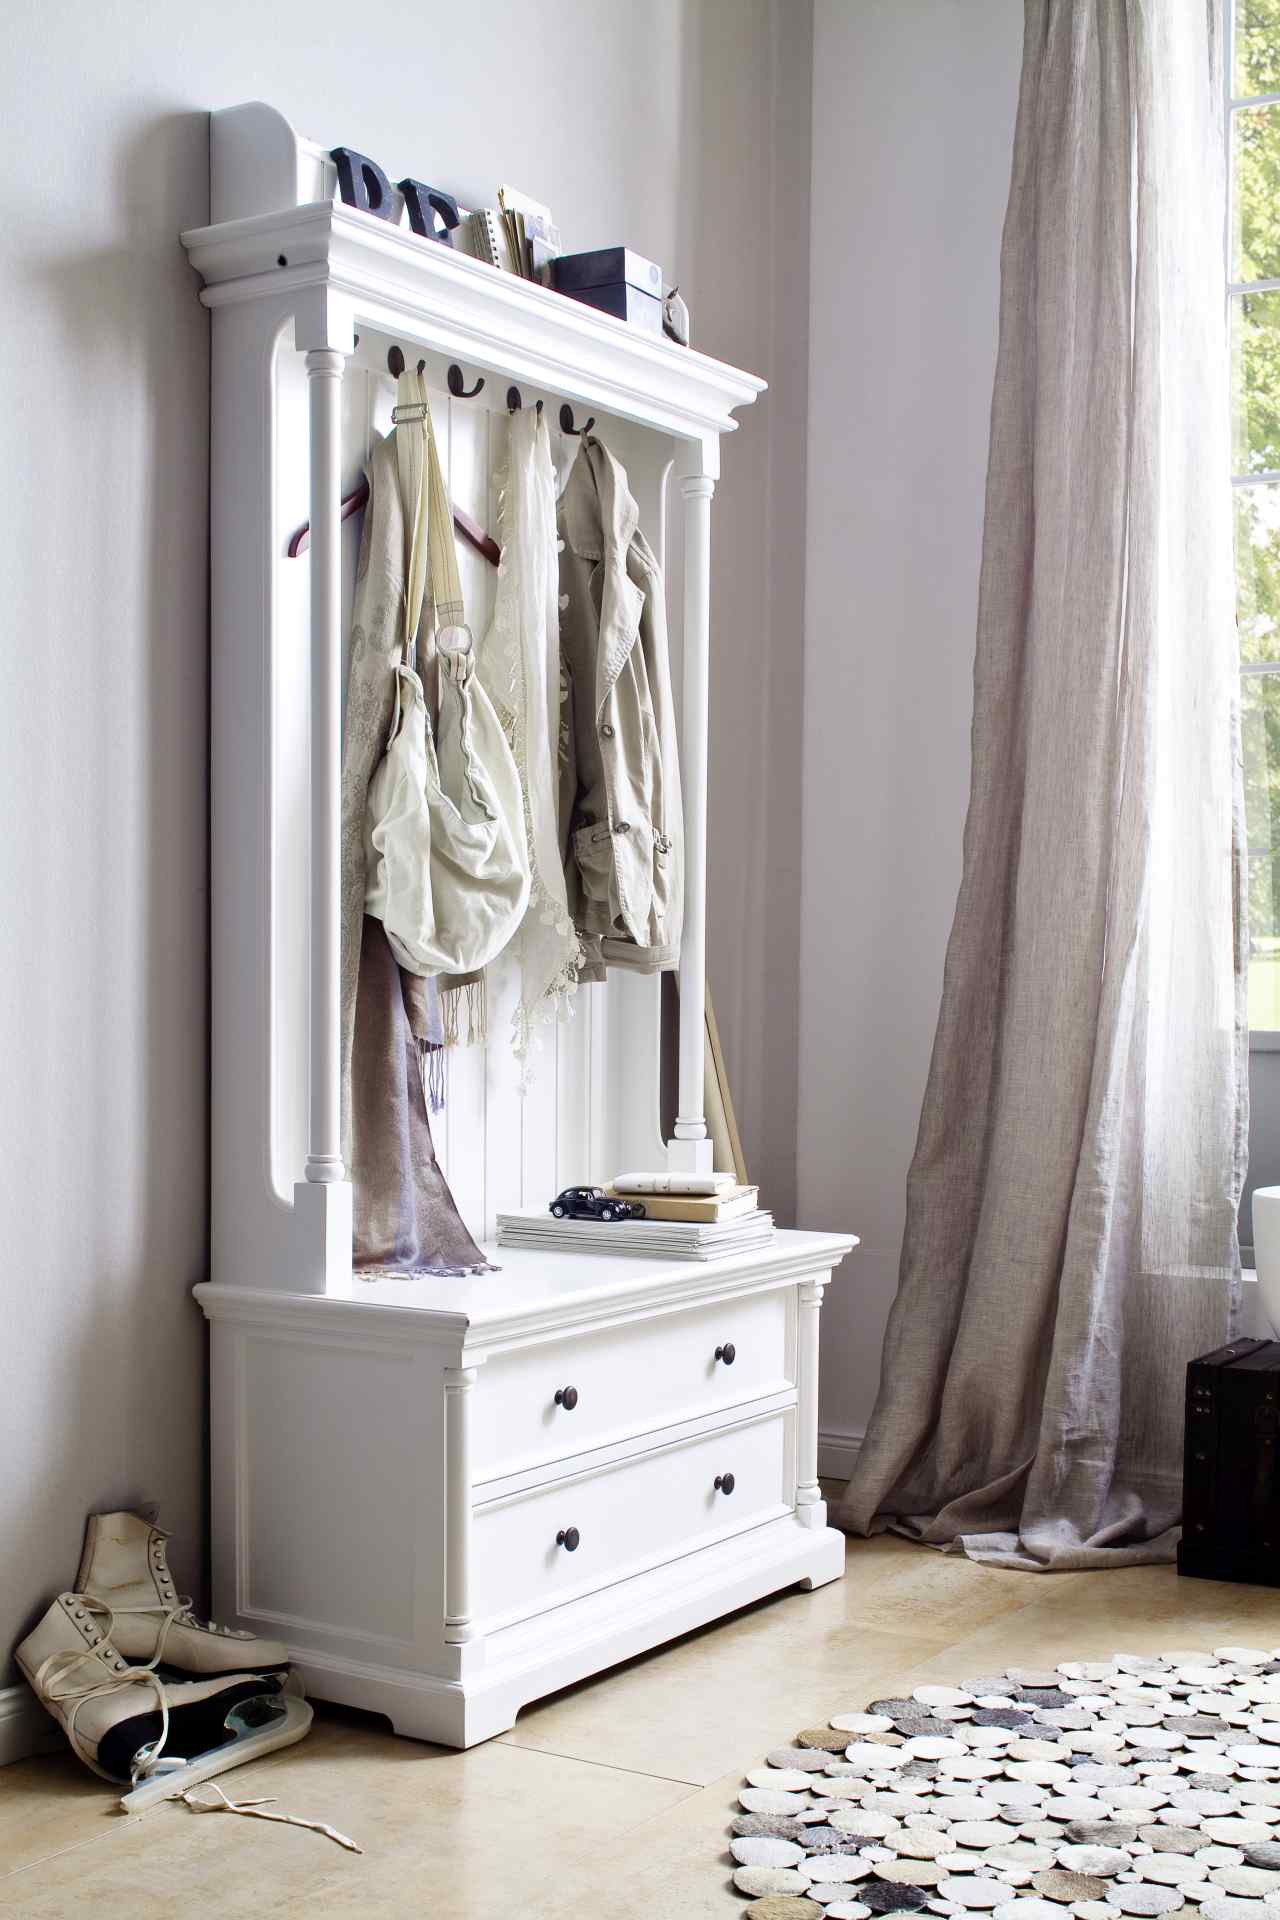 Die Garderobe Provence überzeugt mit ihrem Landhaus Stil. Gefertigt wurde sie aus Mahagoni Holz, welches einen weißen Farbton besitzt. Die Garderobe verfügt über zwei Schubladen, fünf Haken und eine Sitzbank. Die Breite beträgt 100 cm.